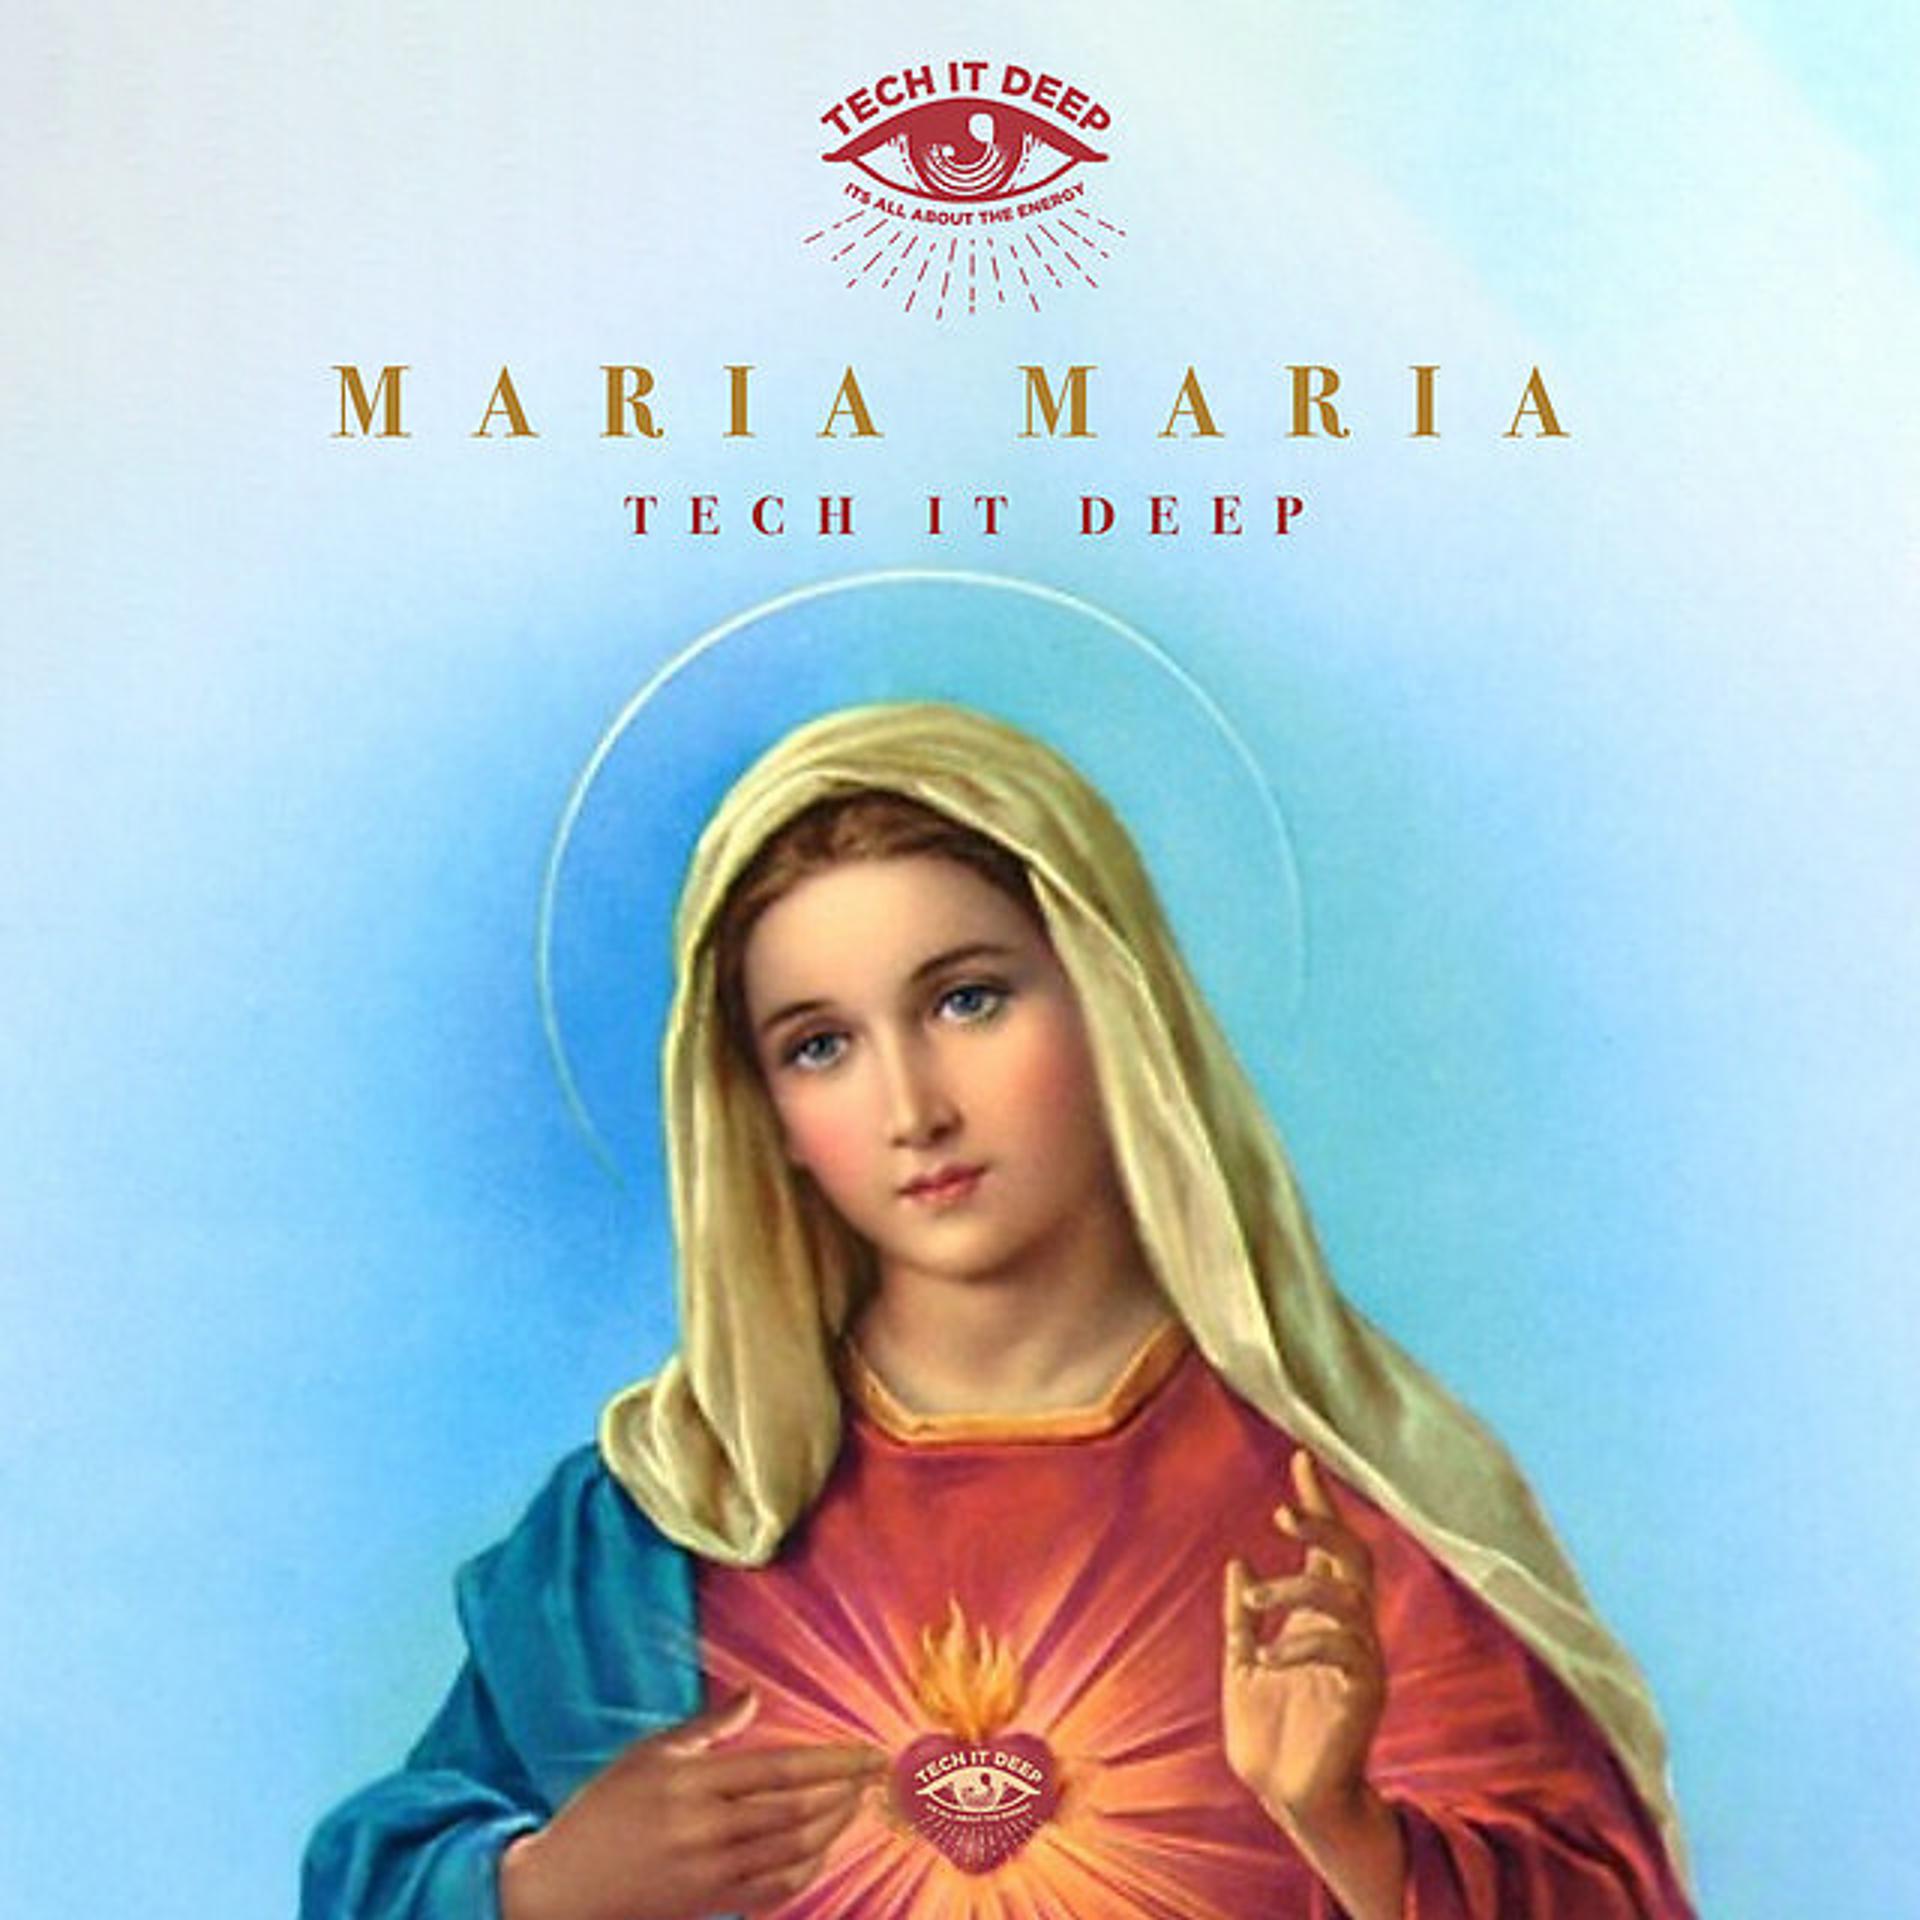 Maria maria download. Maria Maria Extended. Тото ма Maria. Tech it Deep - Maria Maria (Diplo Remix).